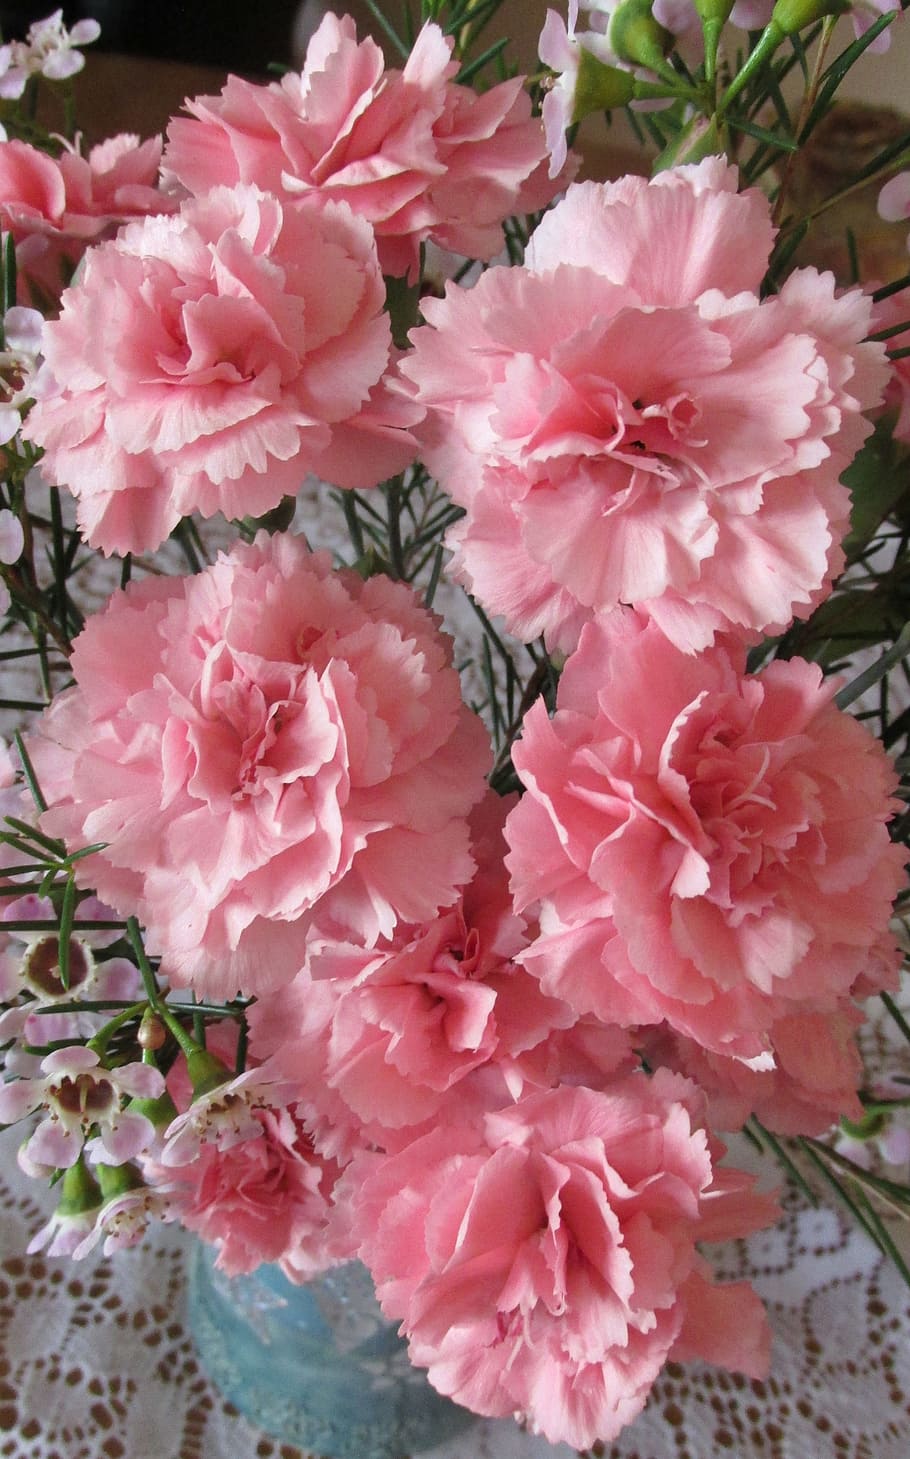 bunga merah muda, anyelir, merah muda, parfum, bunga, tanaman, warna merah muda, tanaman berbunga, keindahan di alam, kesegaran